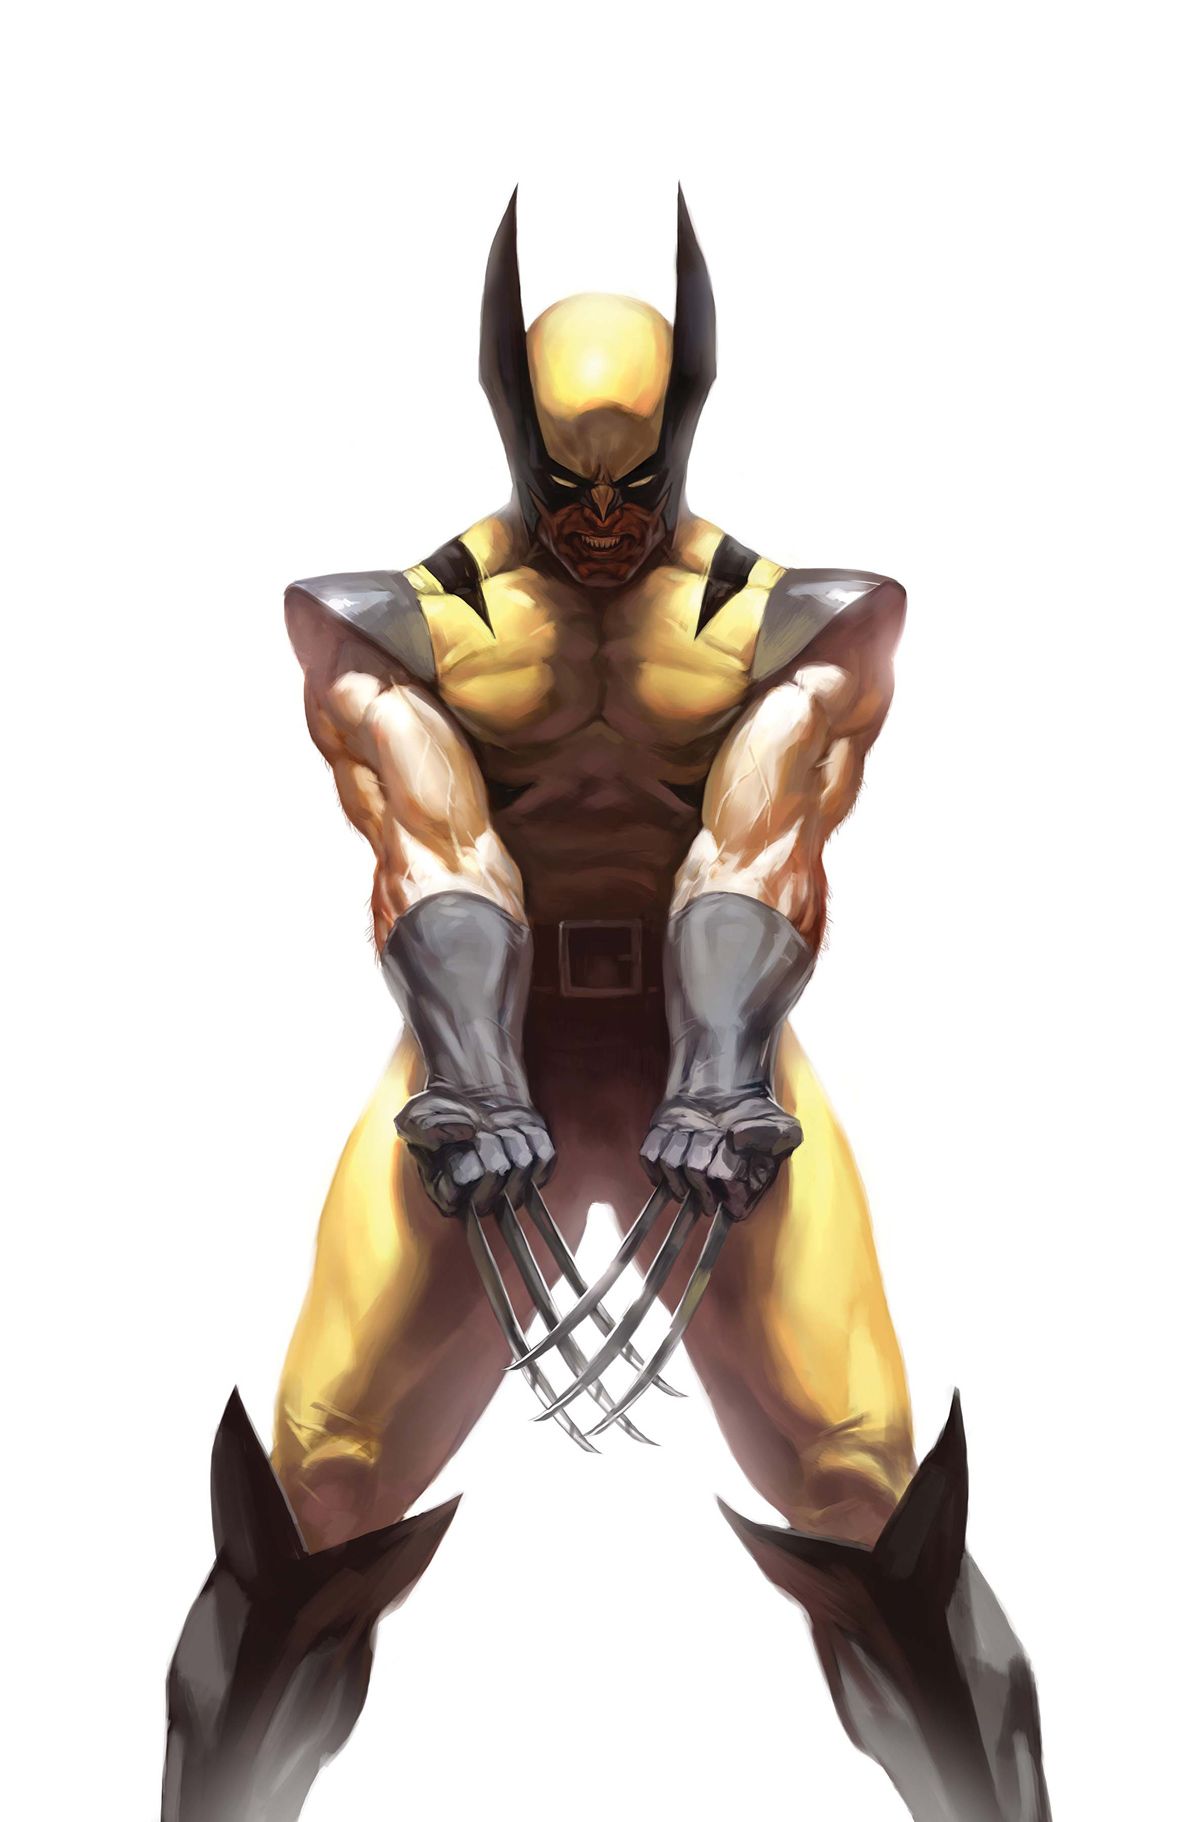 Wolverine (James Logan Howlett). Wolverine marvel, Wolverine comic, Wolverine